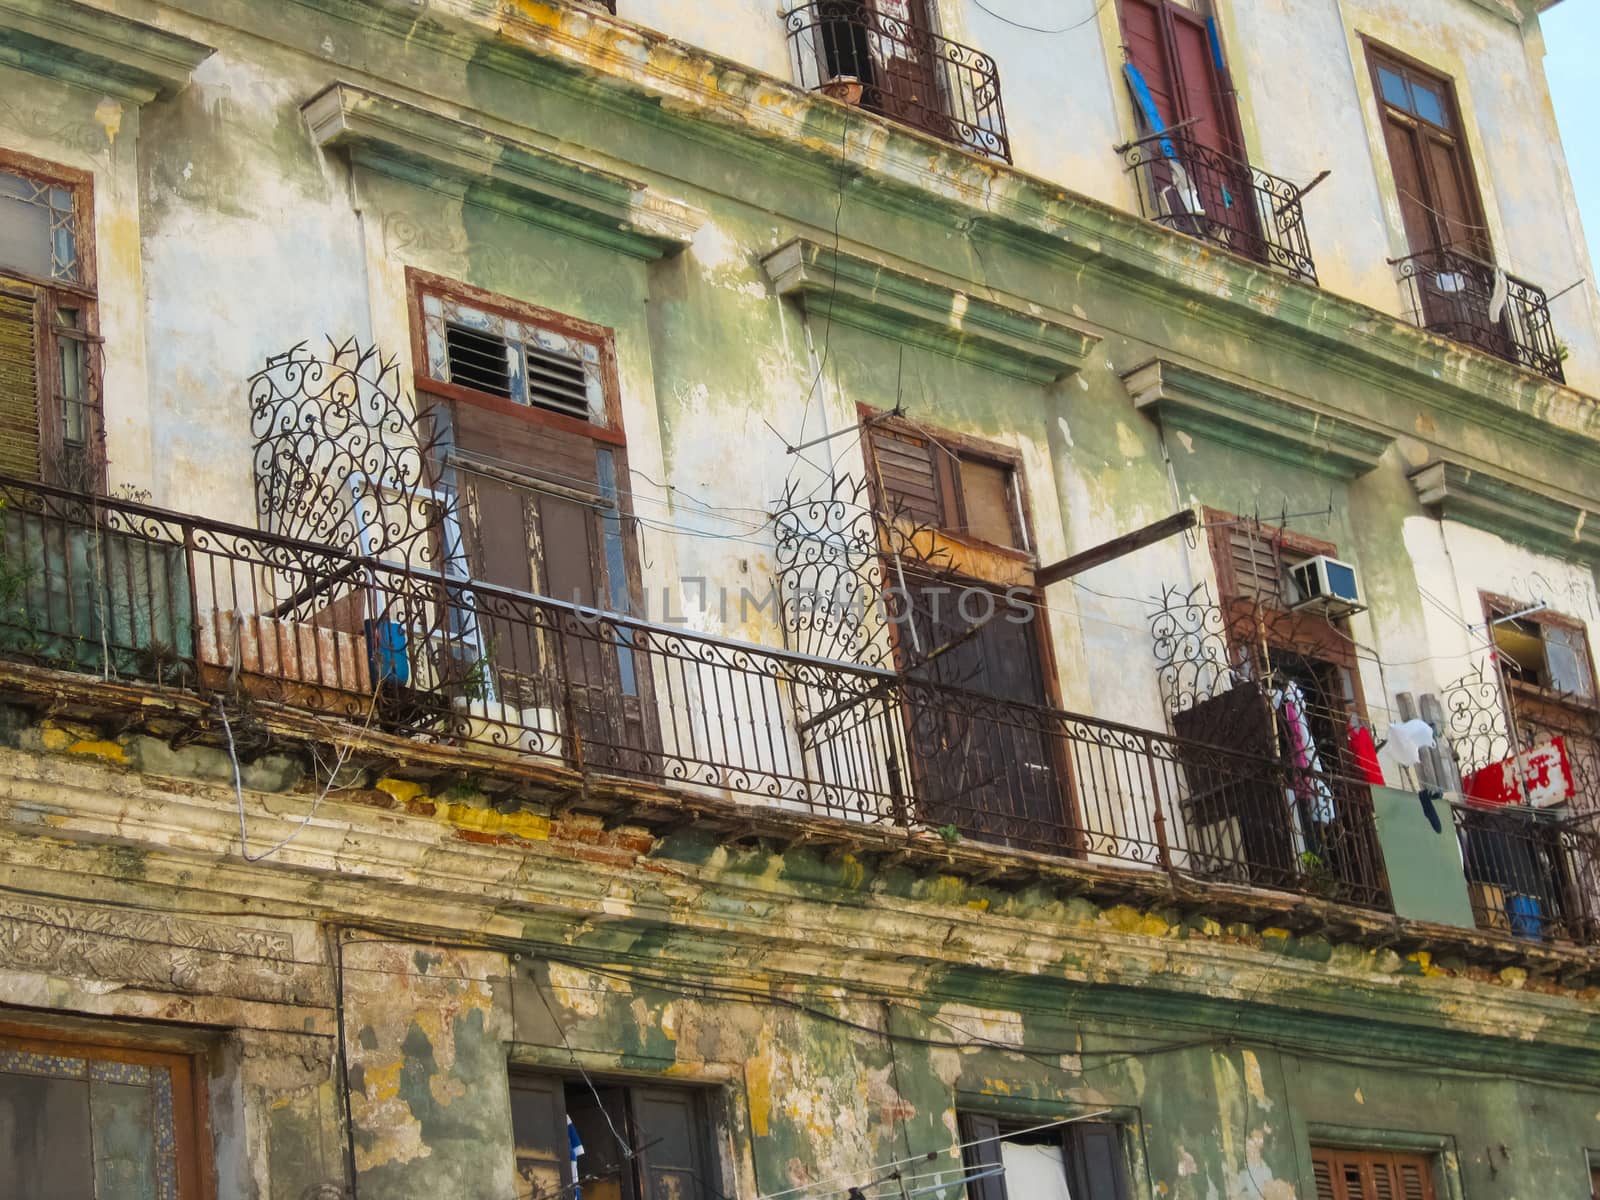 Streets of Havana, a Hiking Walks in Havana. by DePo